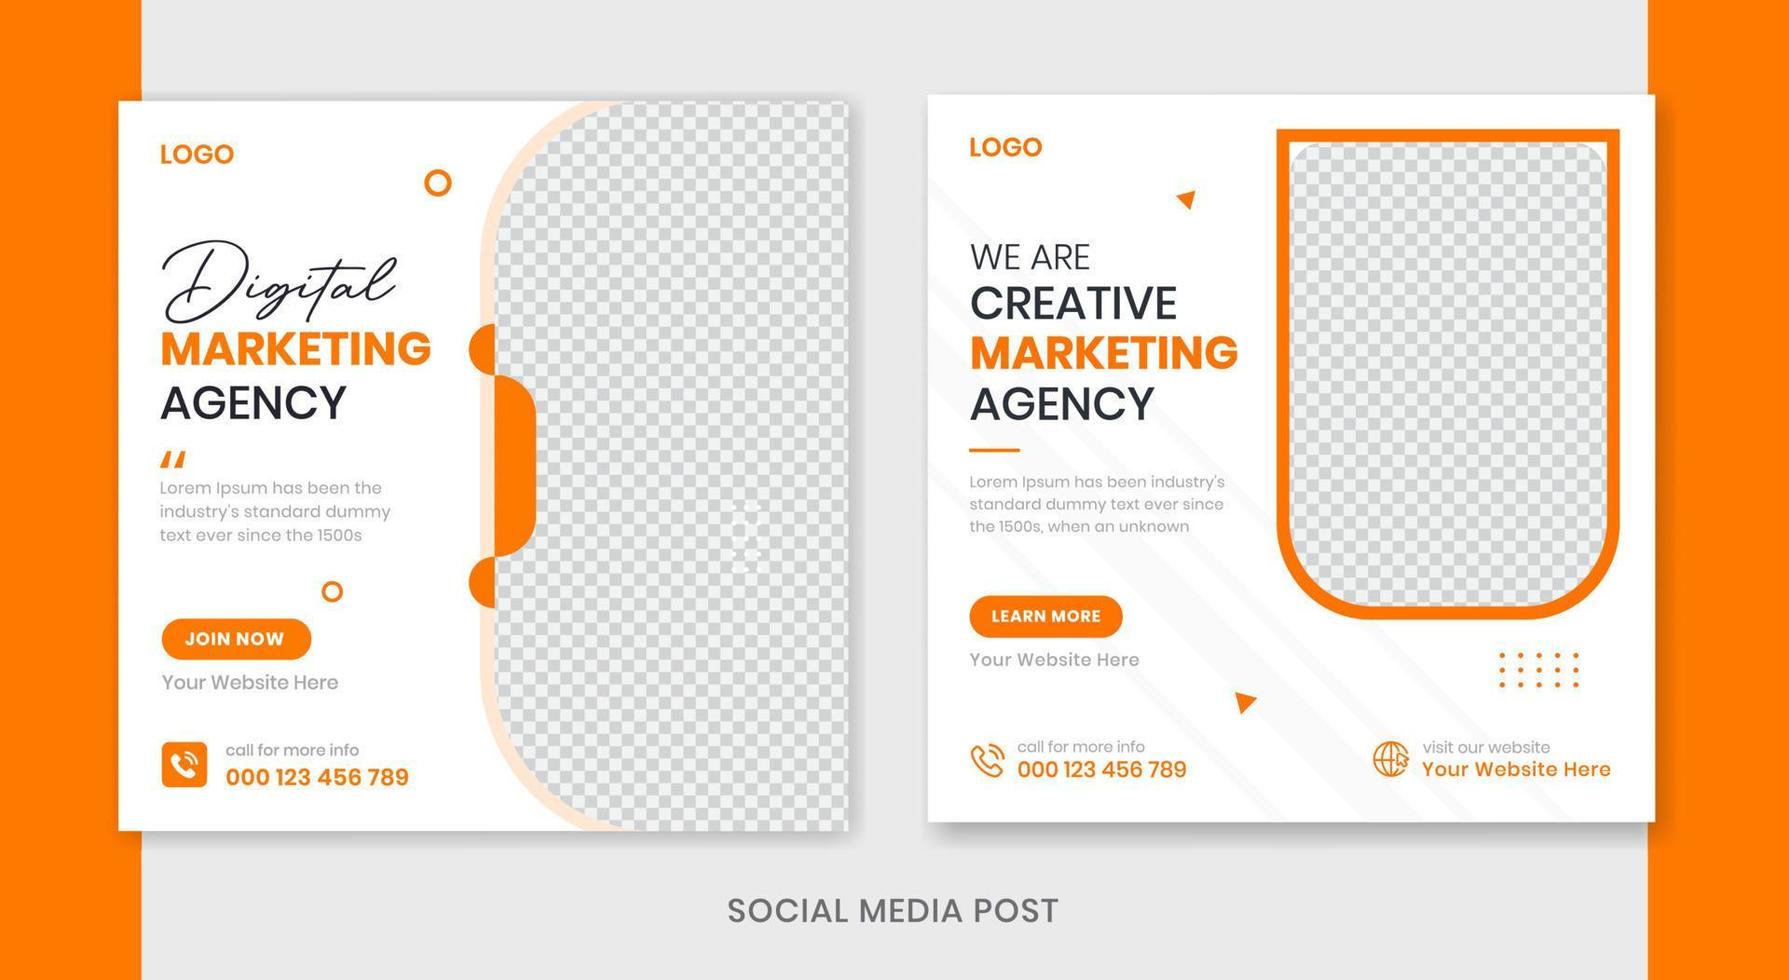 modelo de design de postagem de mídia social corporativa criativa, modelo de postagem de negócios profissional, vetor de conjunto de banner de marketing digital